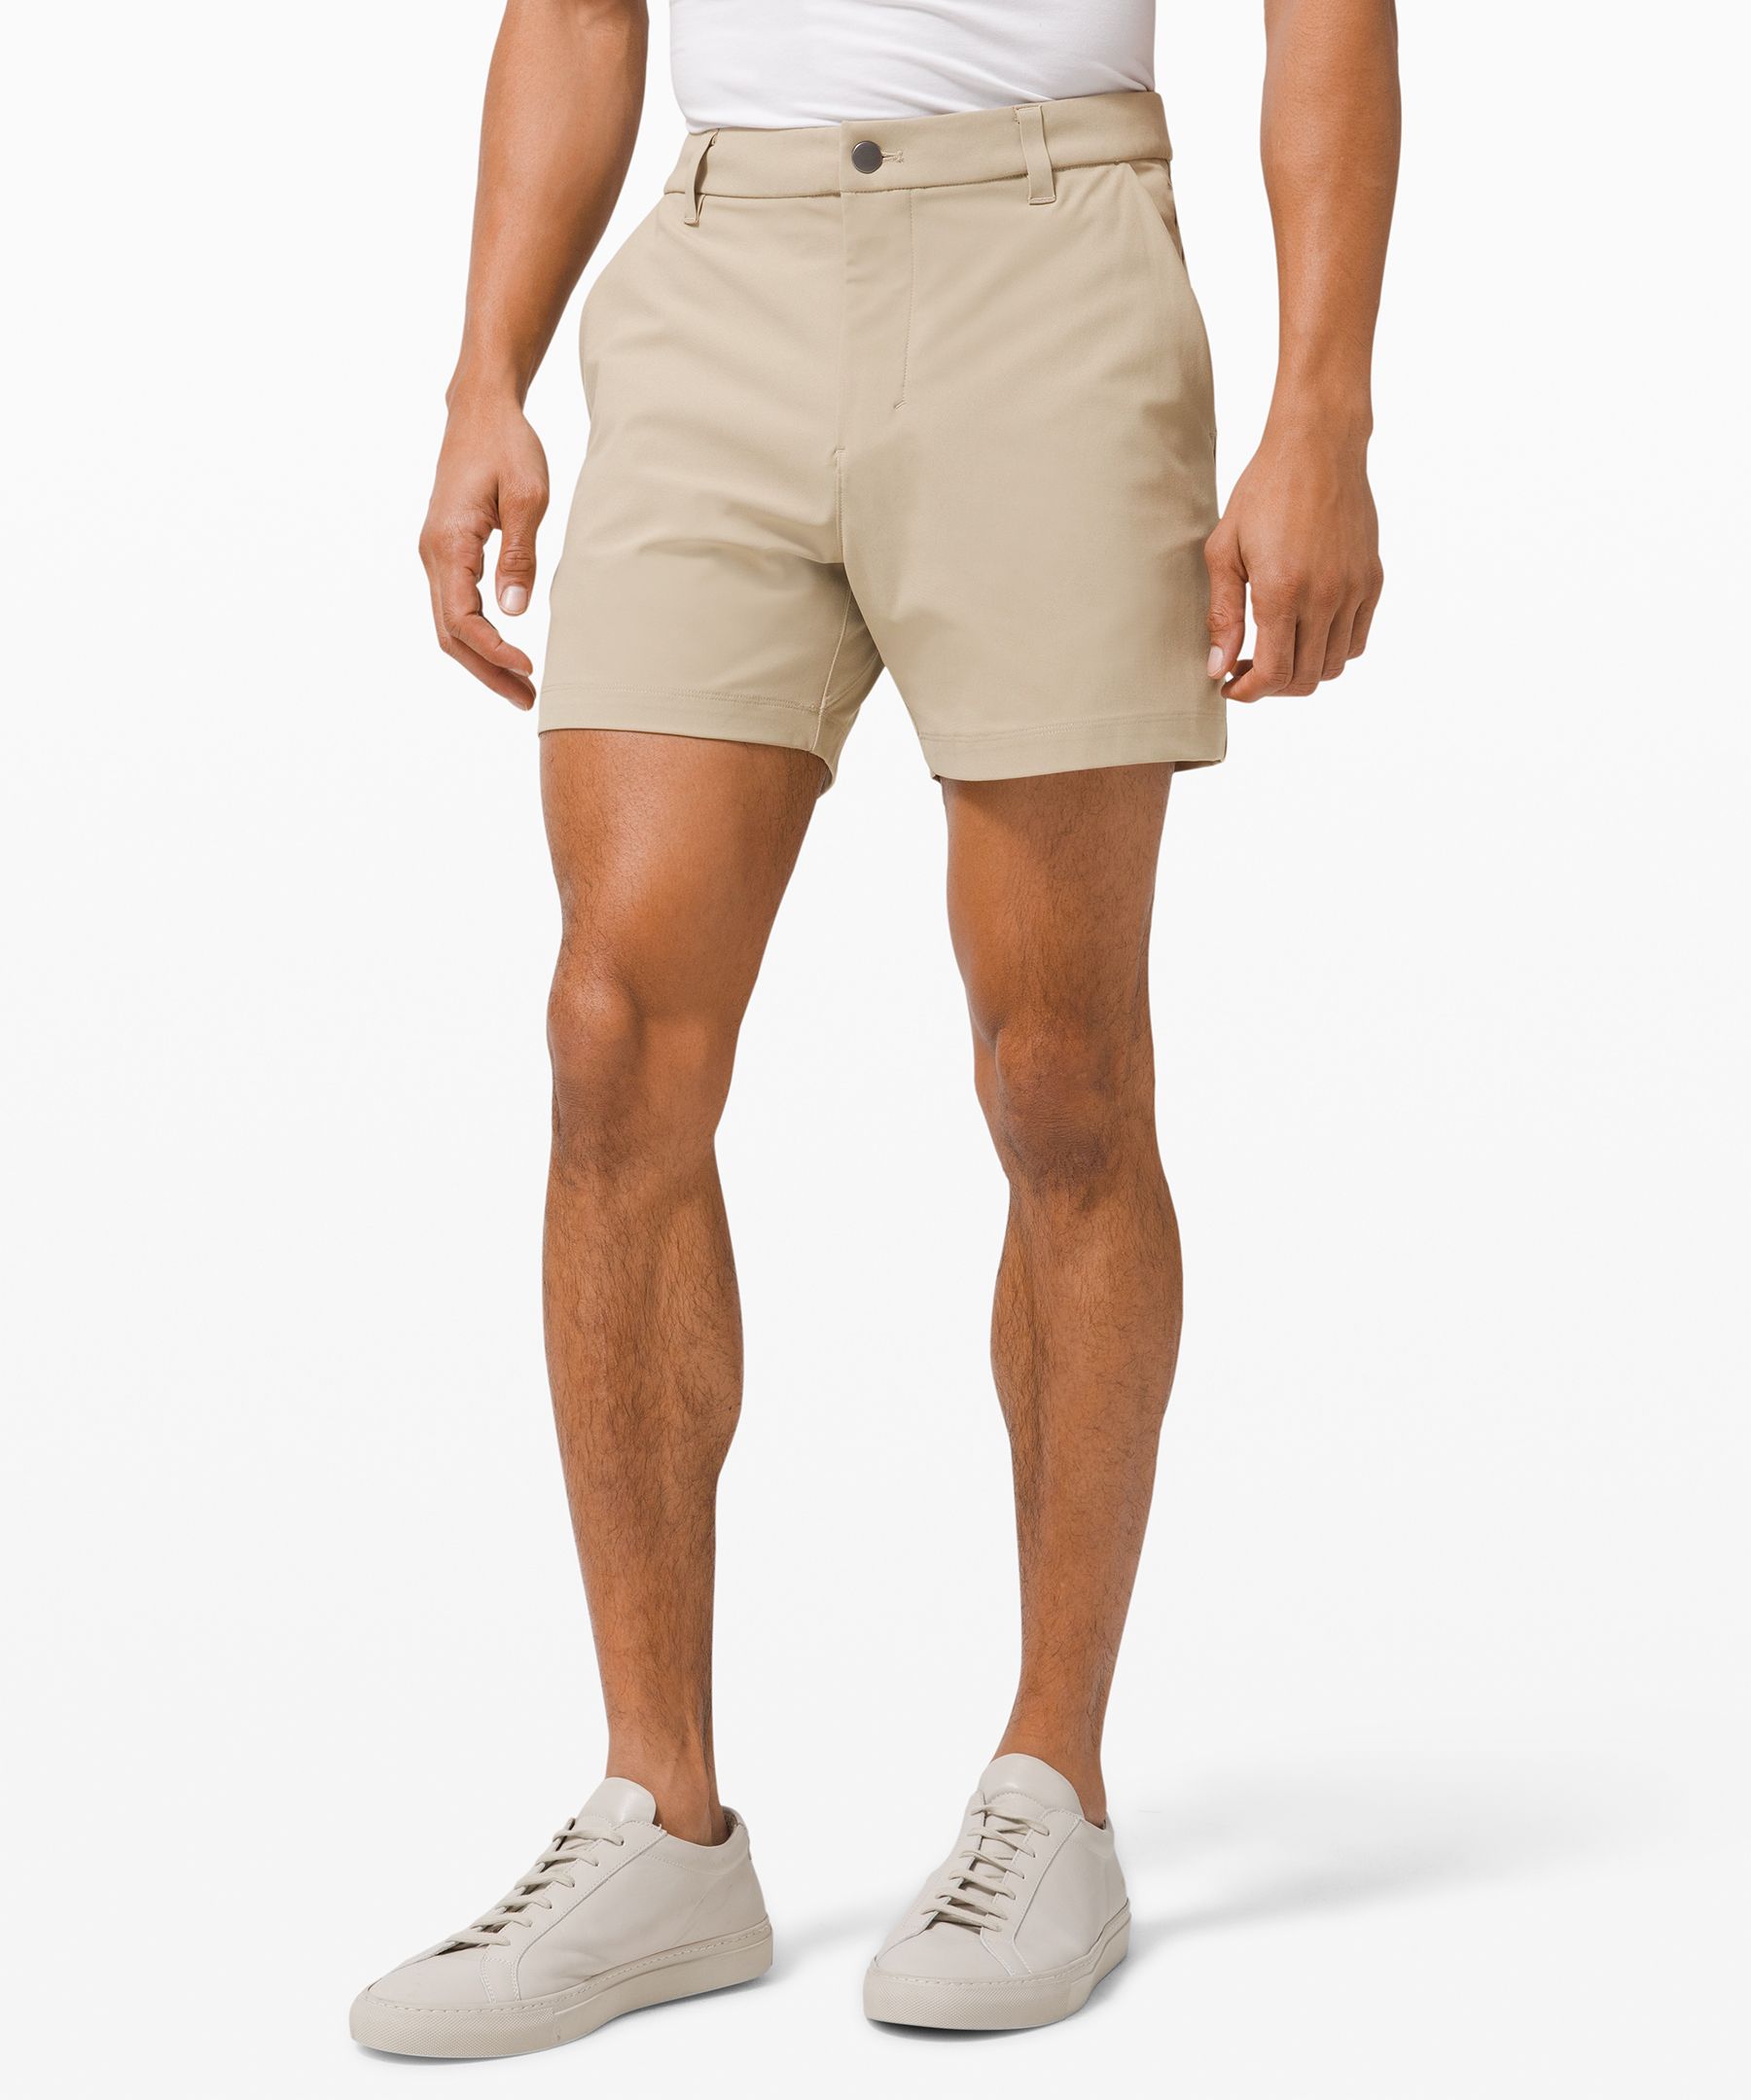 lululemon commission shorts